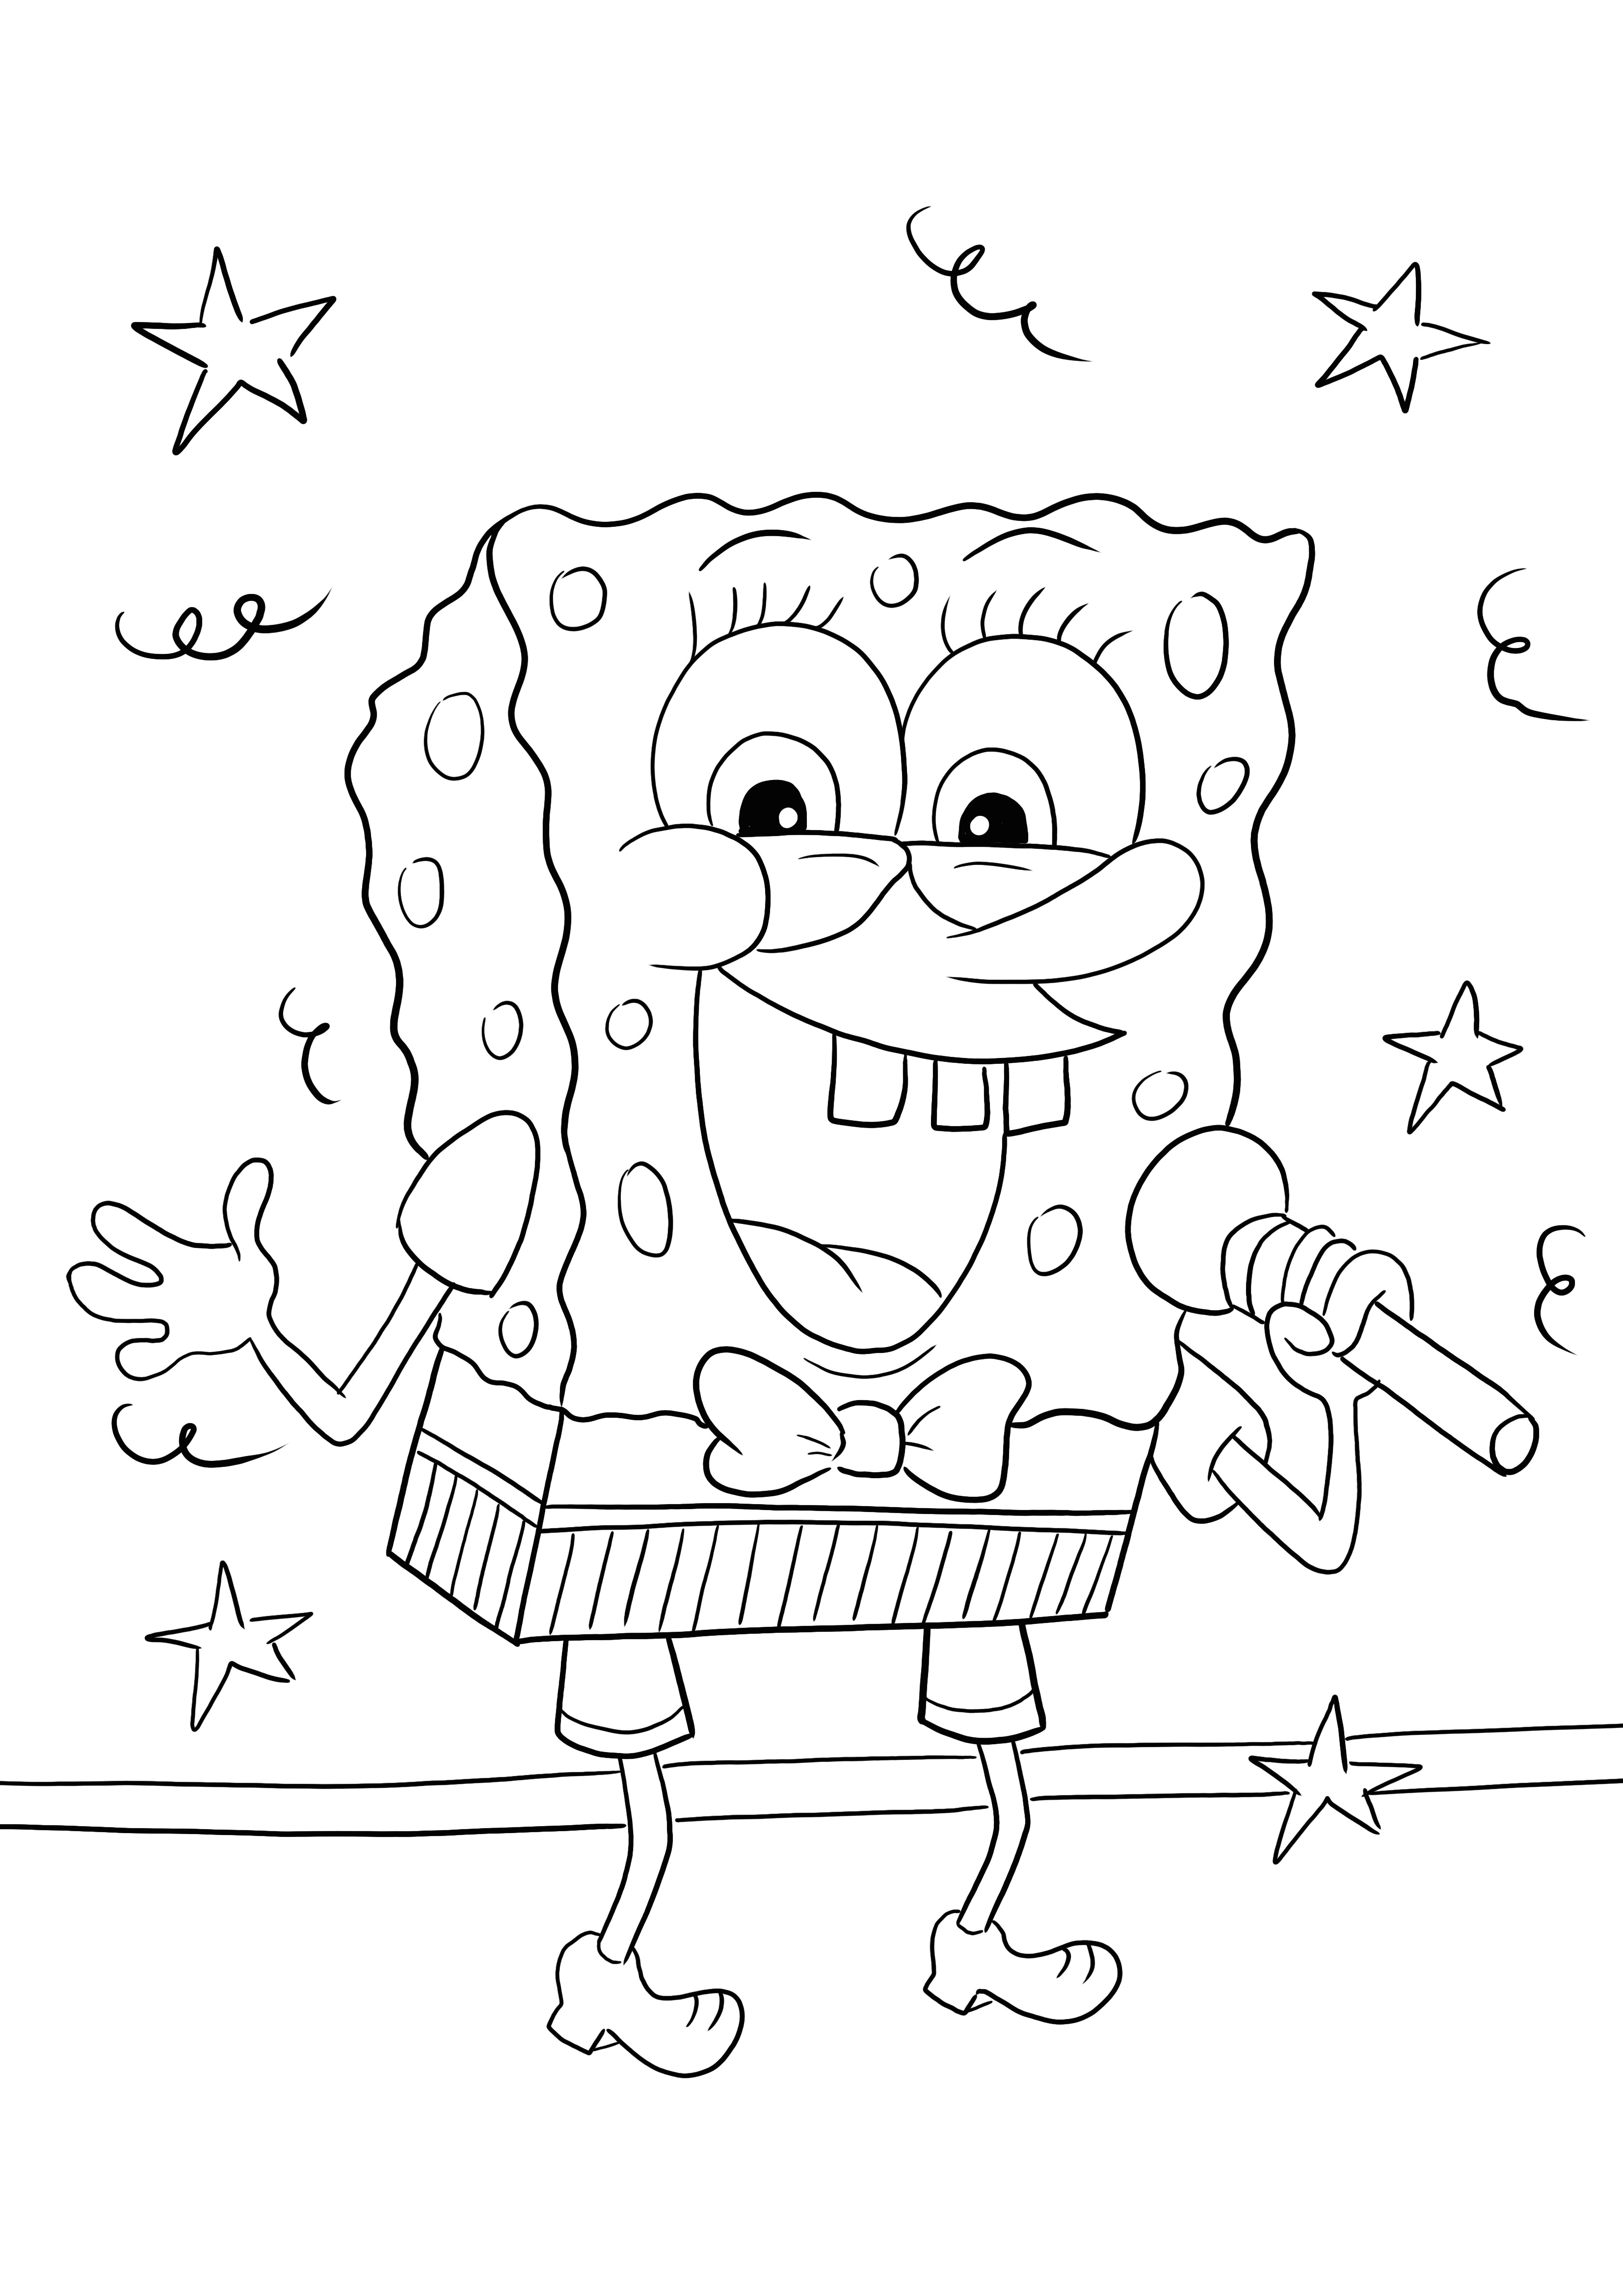 Sponge Bob che canta sul microfono colorando e stampando per divertimento